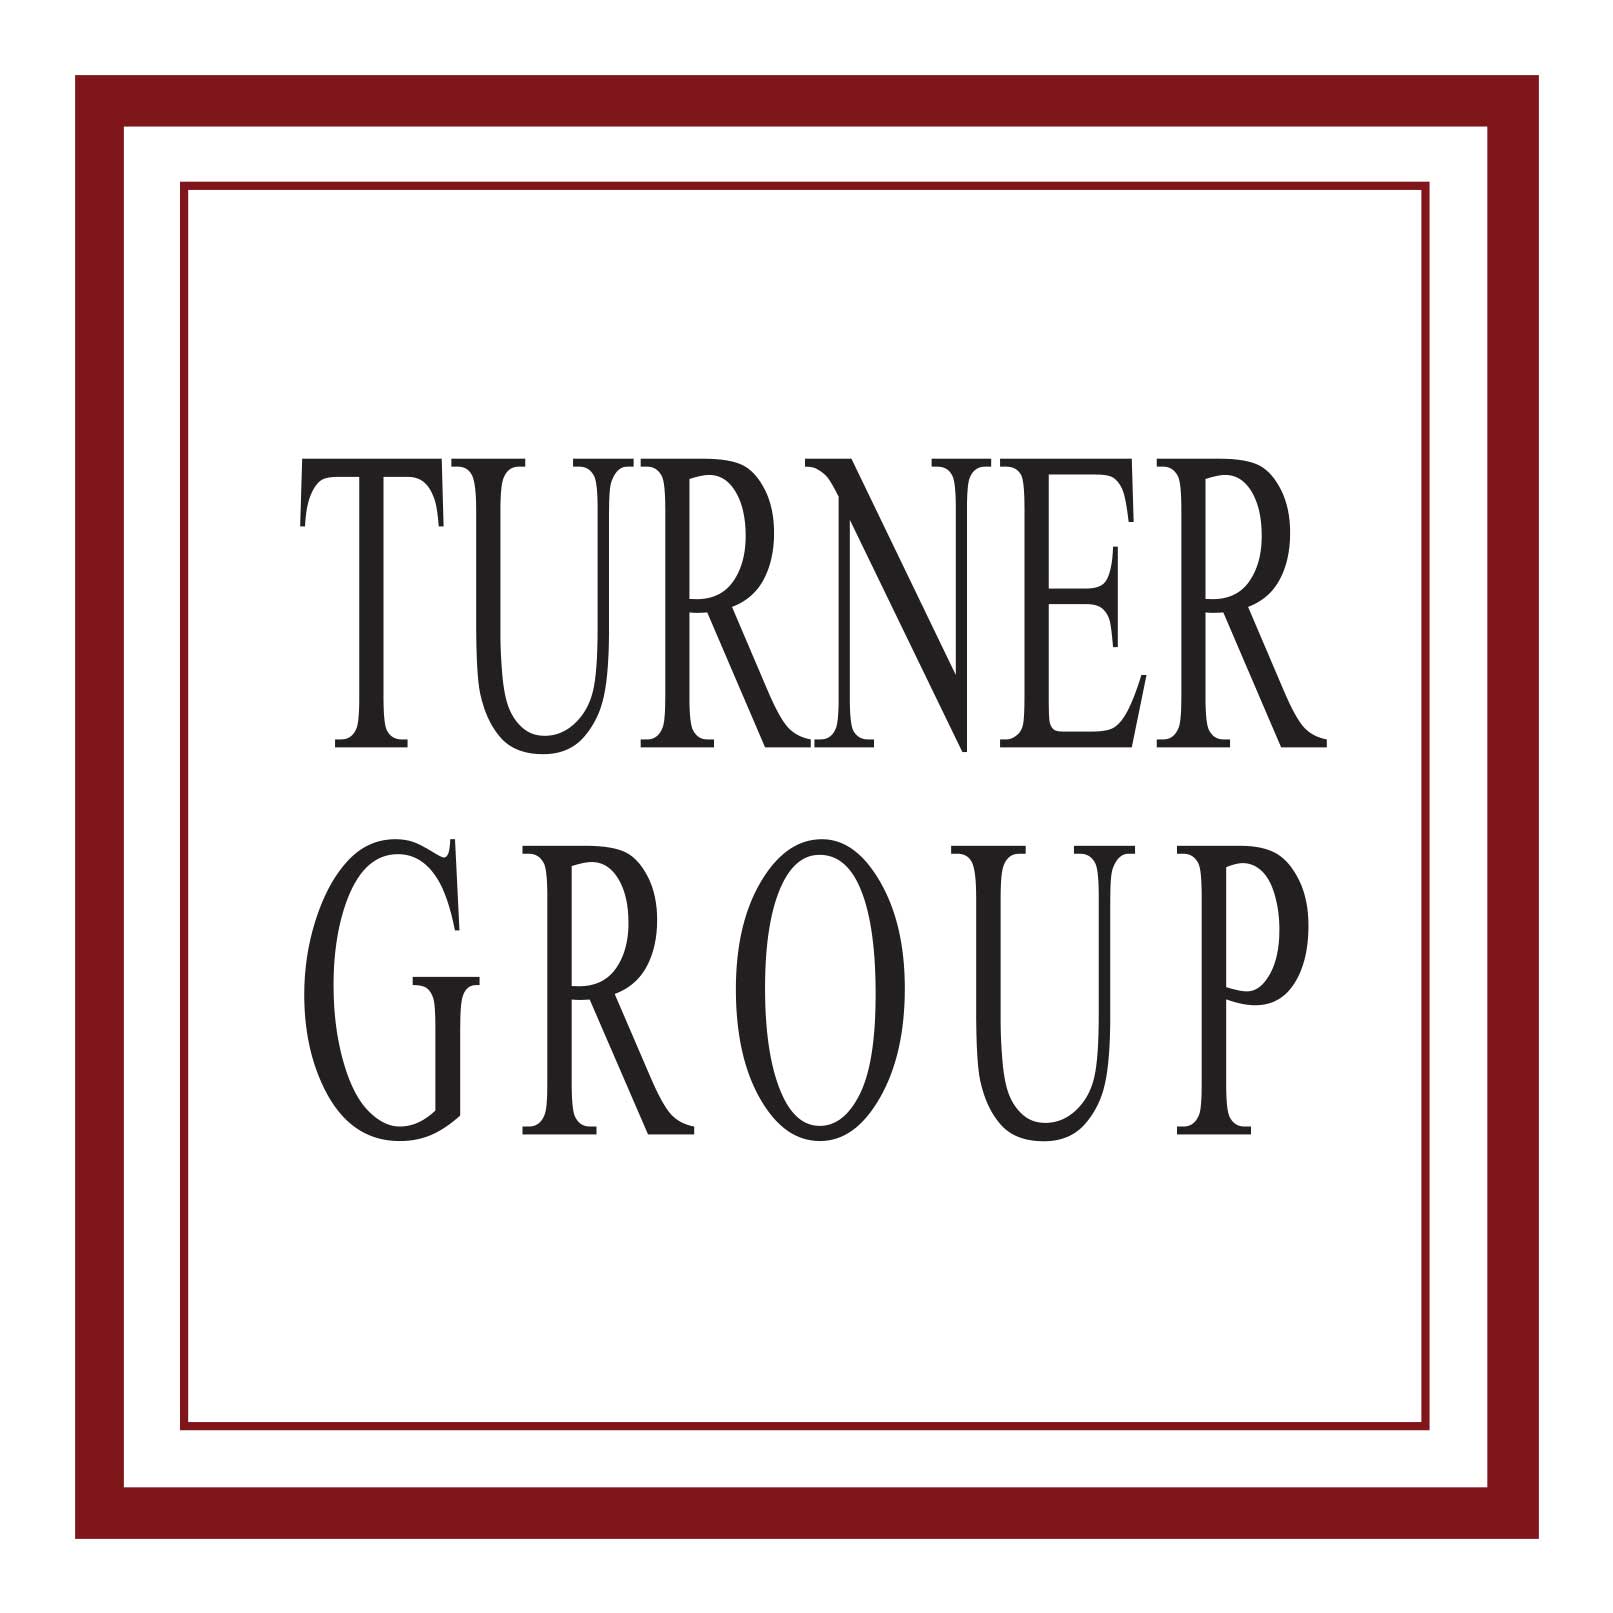 HL Turner Group